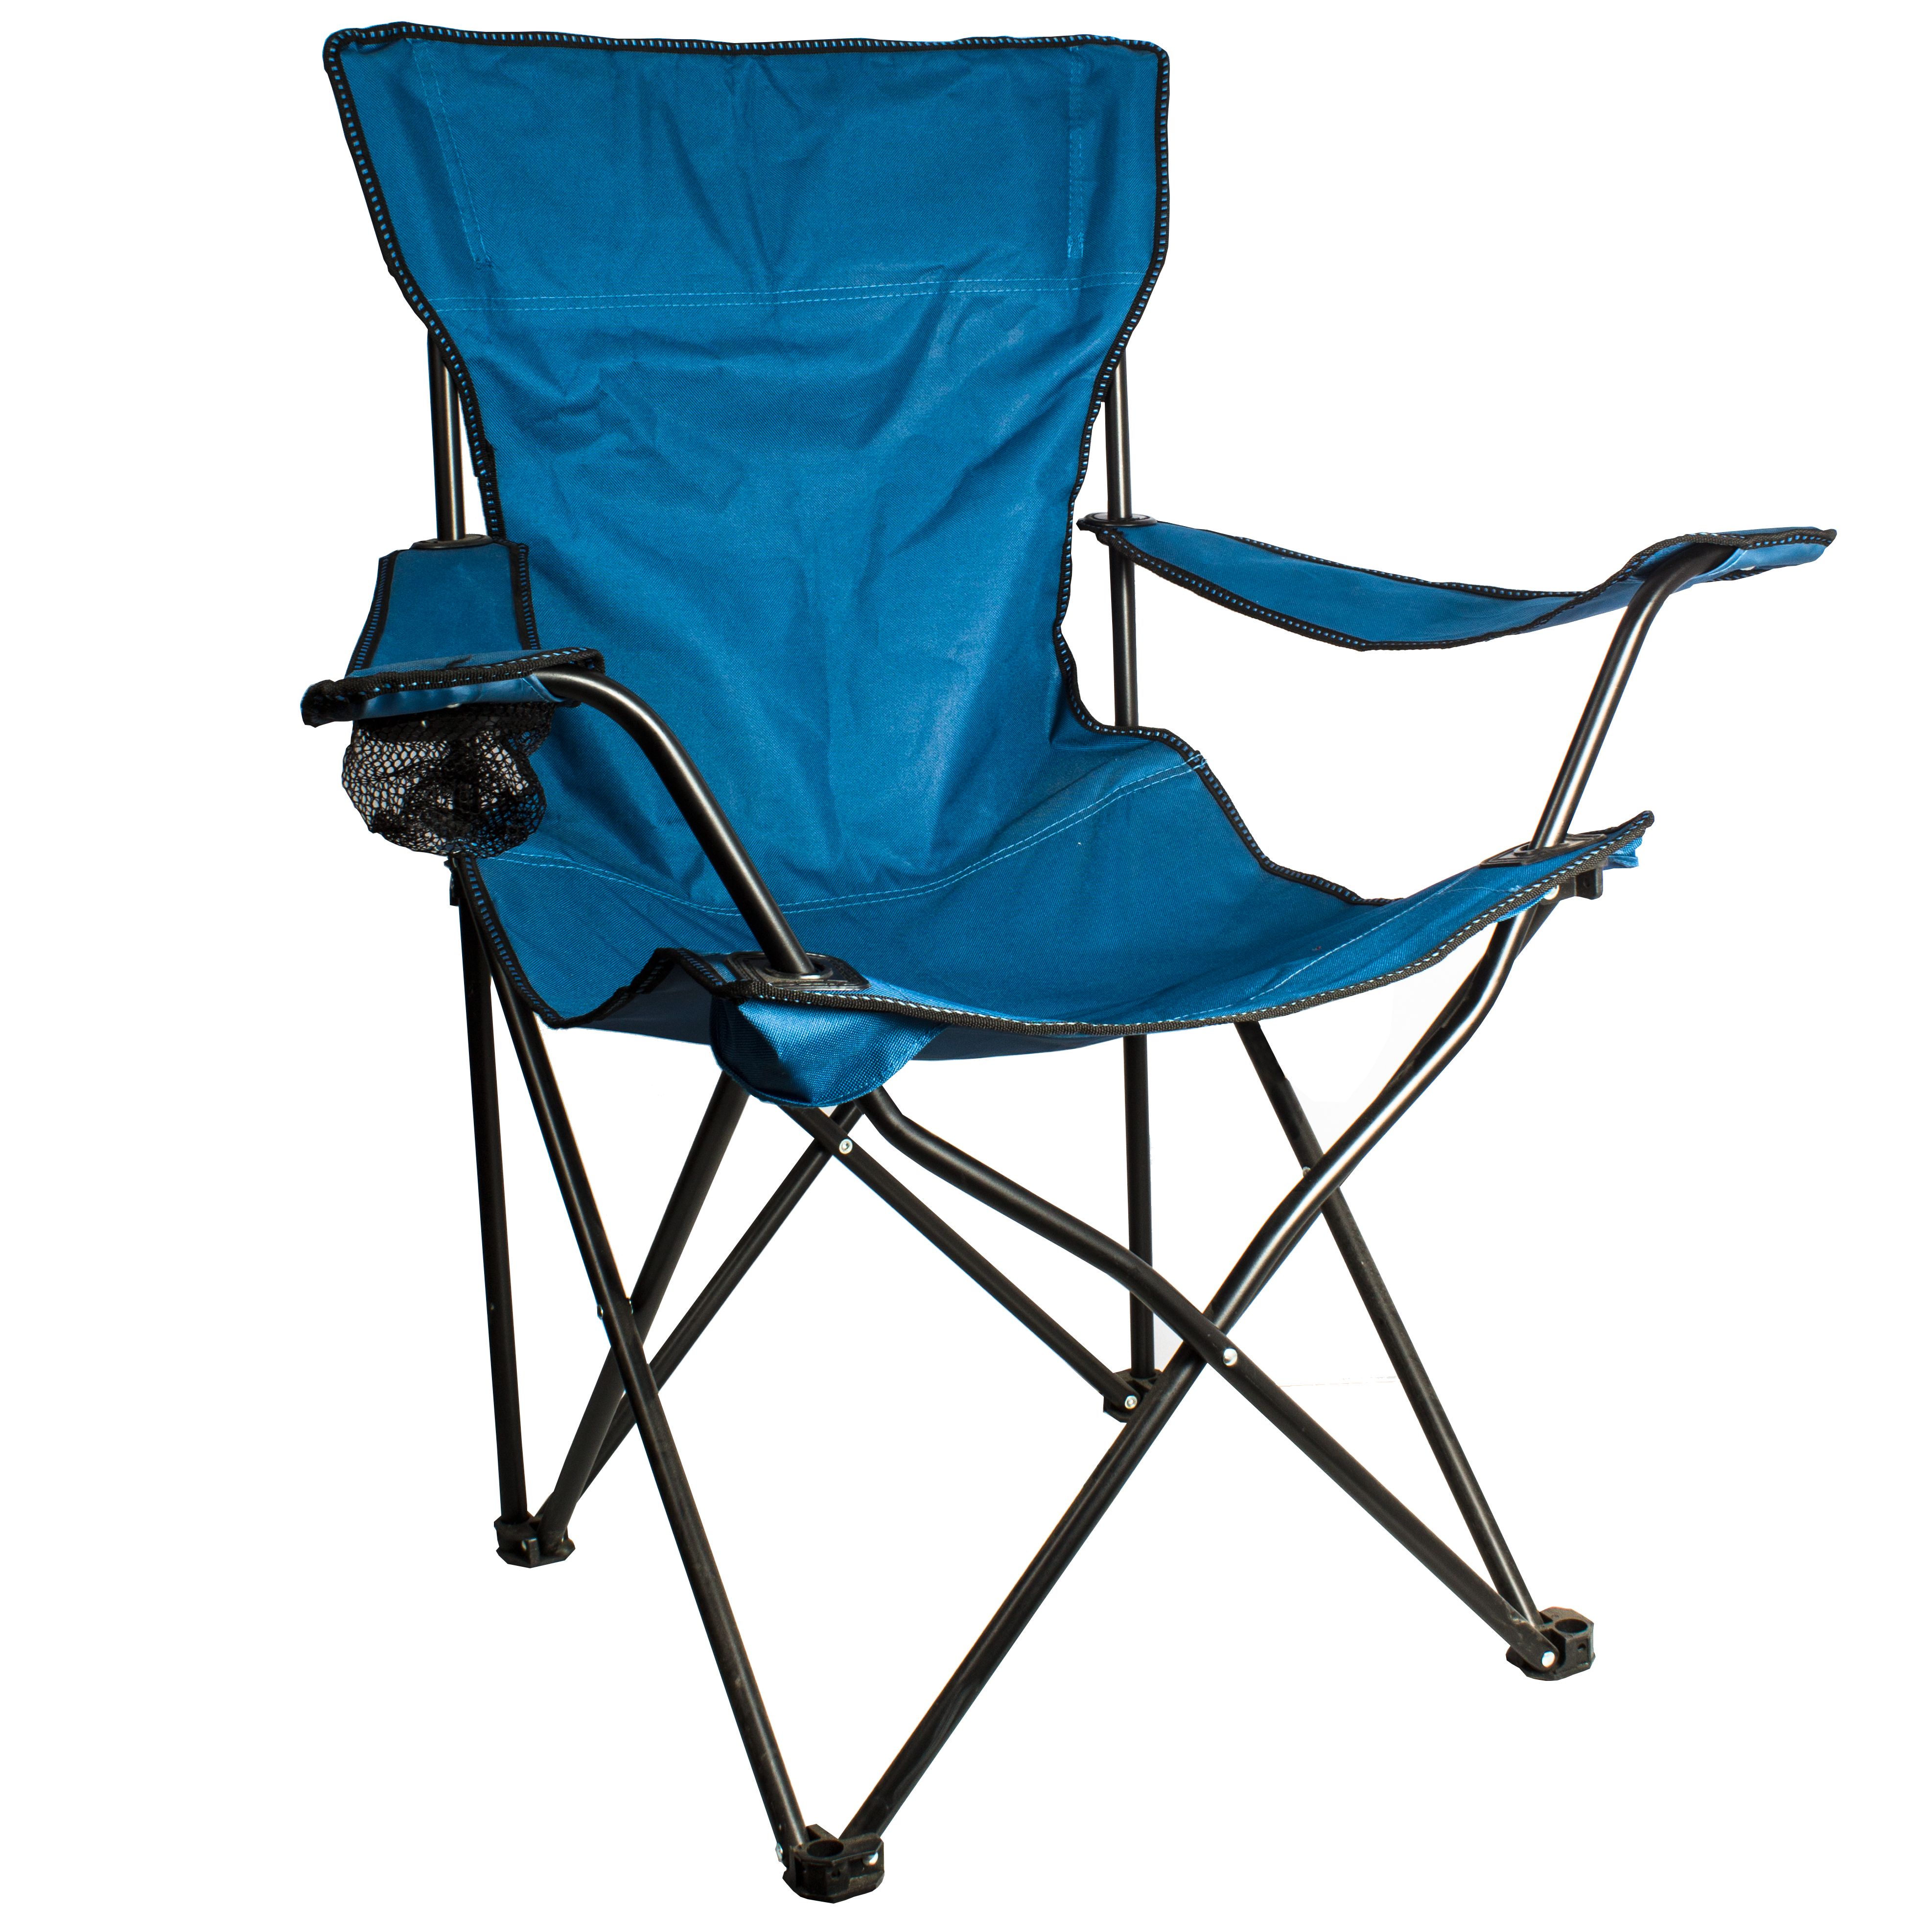 Кресло туристическое складное с подлокотниками. Туристическое кресло Ремингтон. Кресло складное Ремингтон. White Fox кресло складное туристическое с подлокотниками #2021 60401. Кресло складное с подлокотниками CK-305, синий.